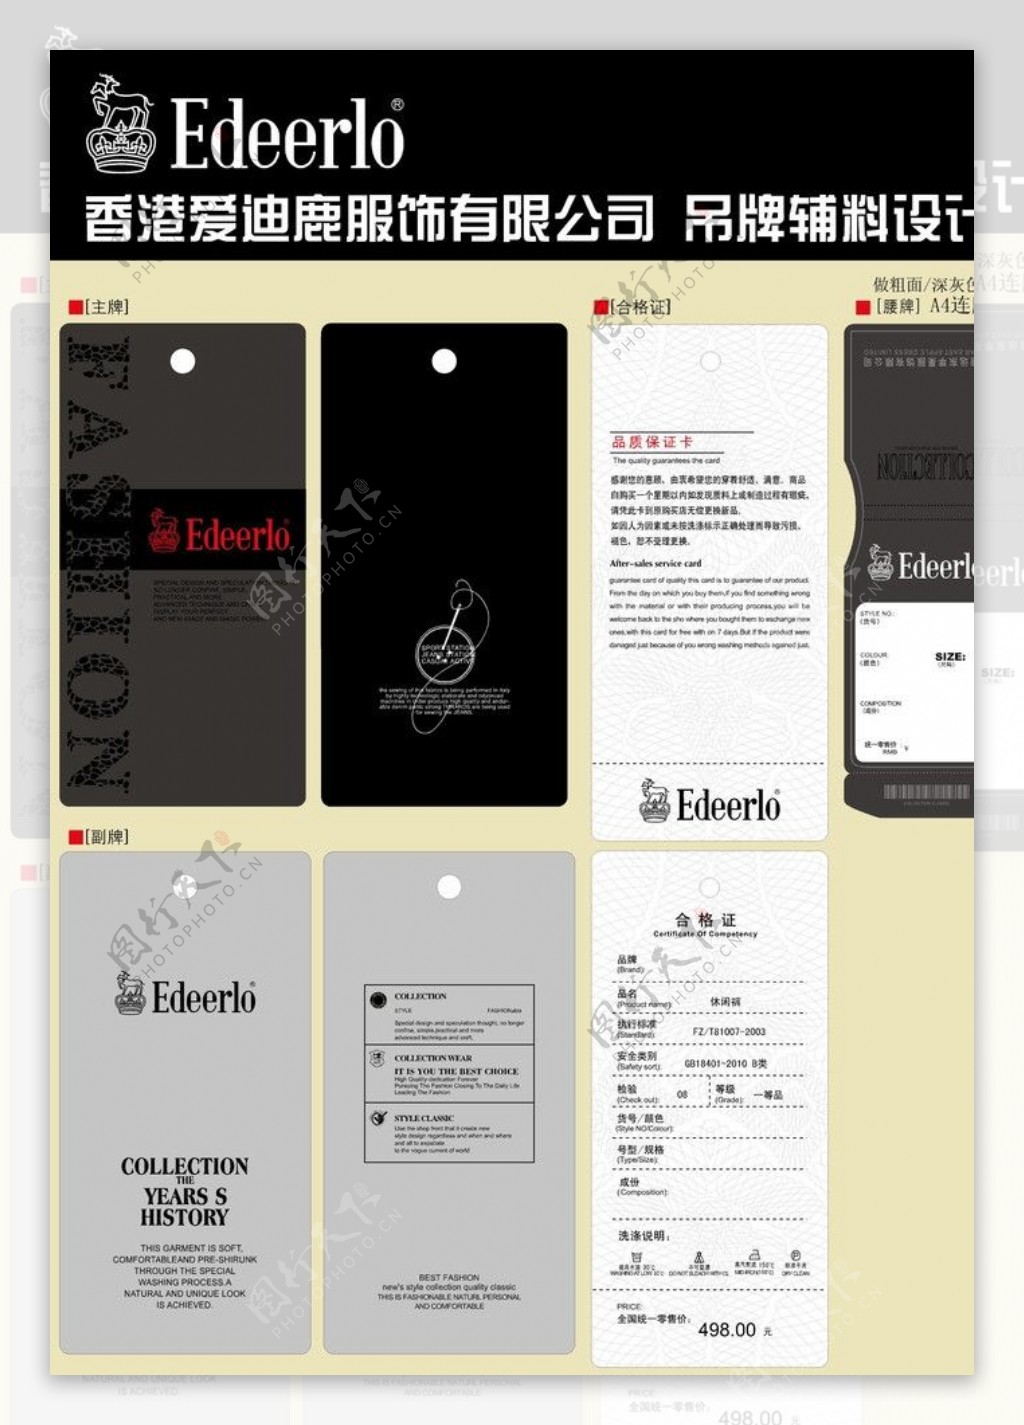 香港爱迪鹿男装品牌吊牌设计图片